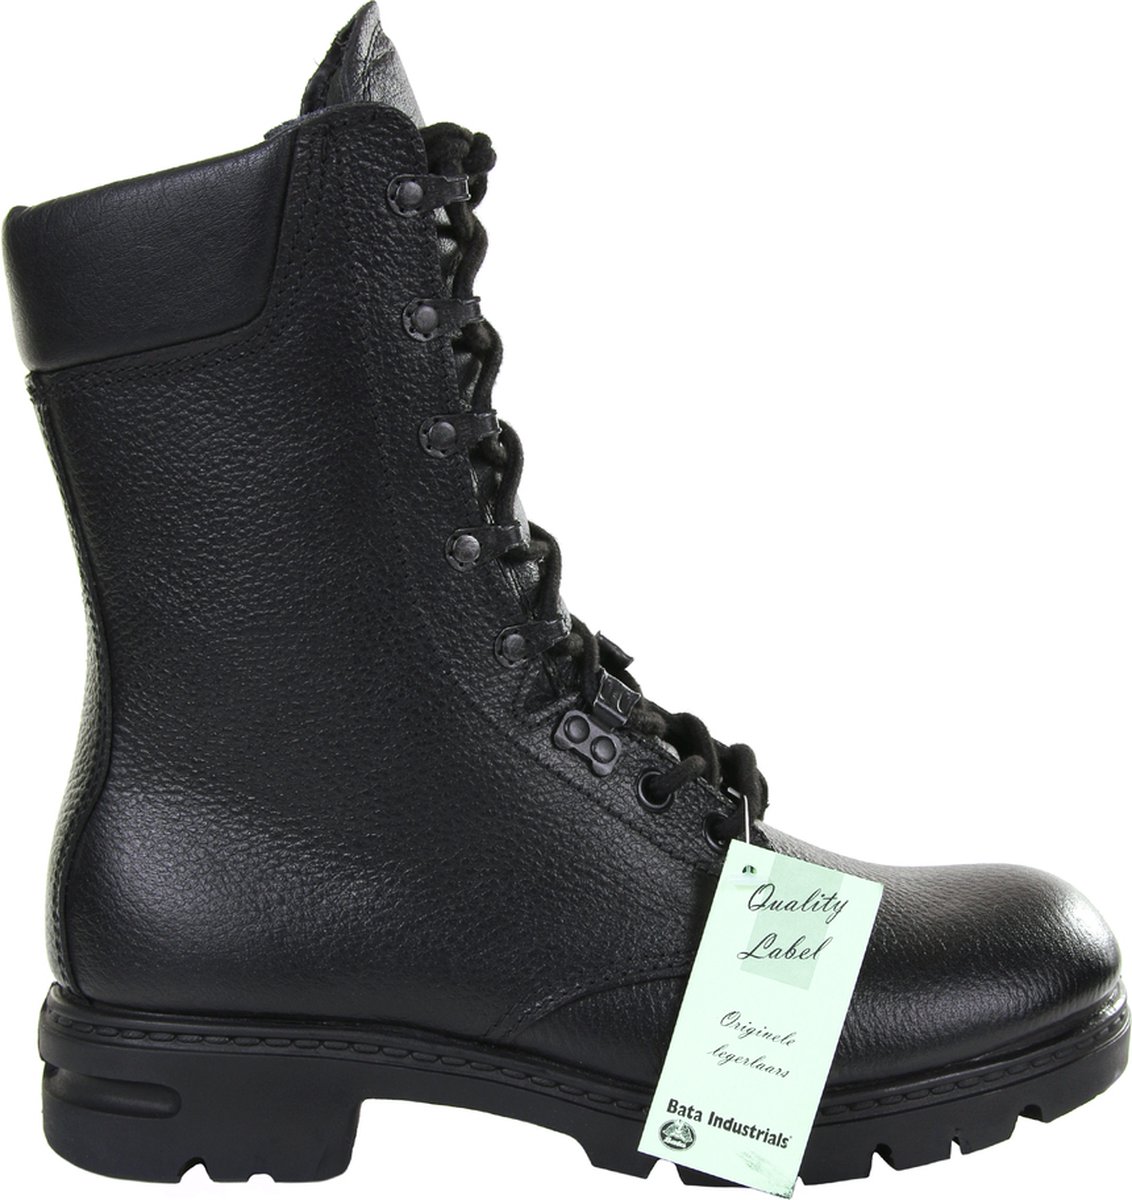 Bata - Original Dutch combat boots Bata M90/M400 (kleur: Zwart / maat: 295M)